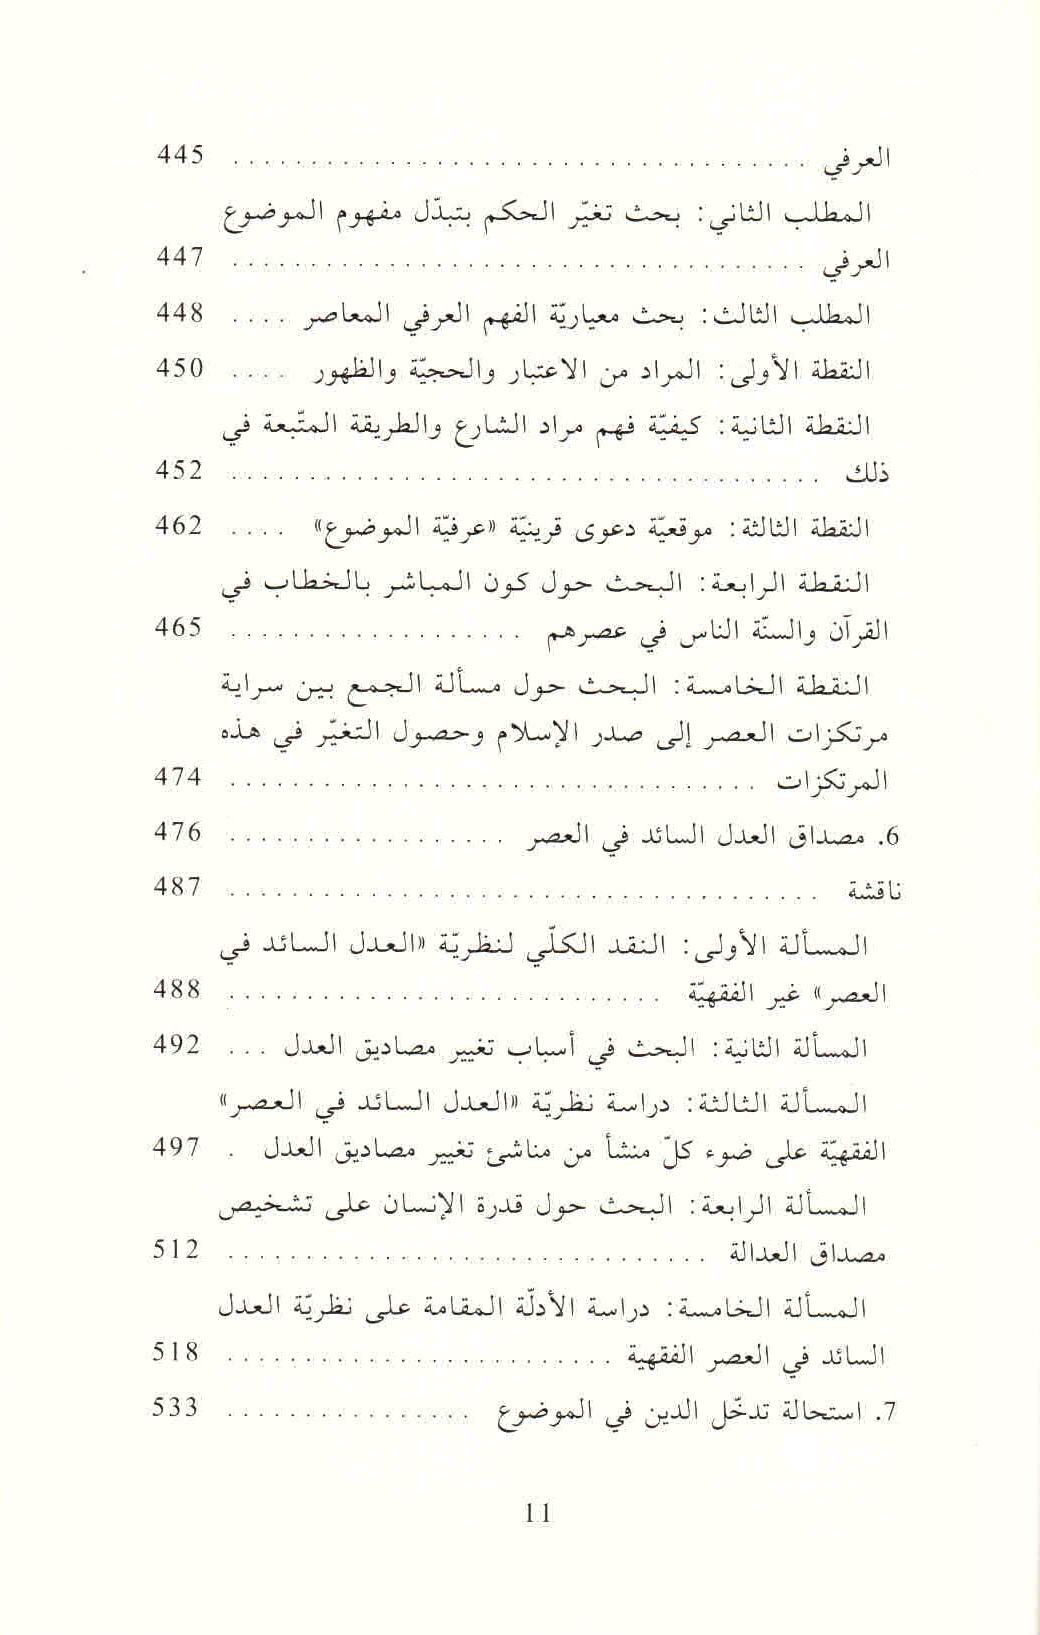 ص. 11 قائمة محتويات كتاب الثابت والمتغير في الأدلة النصية